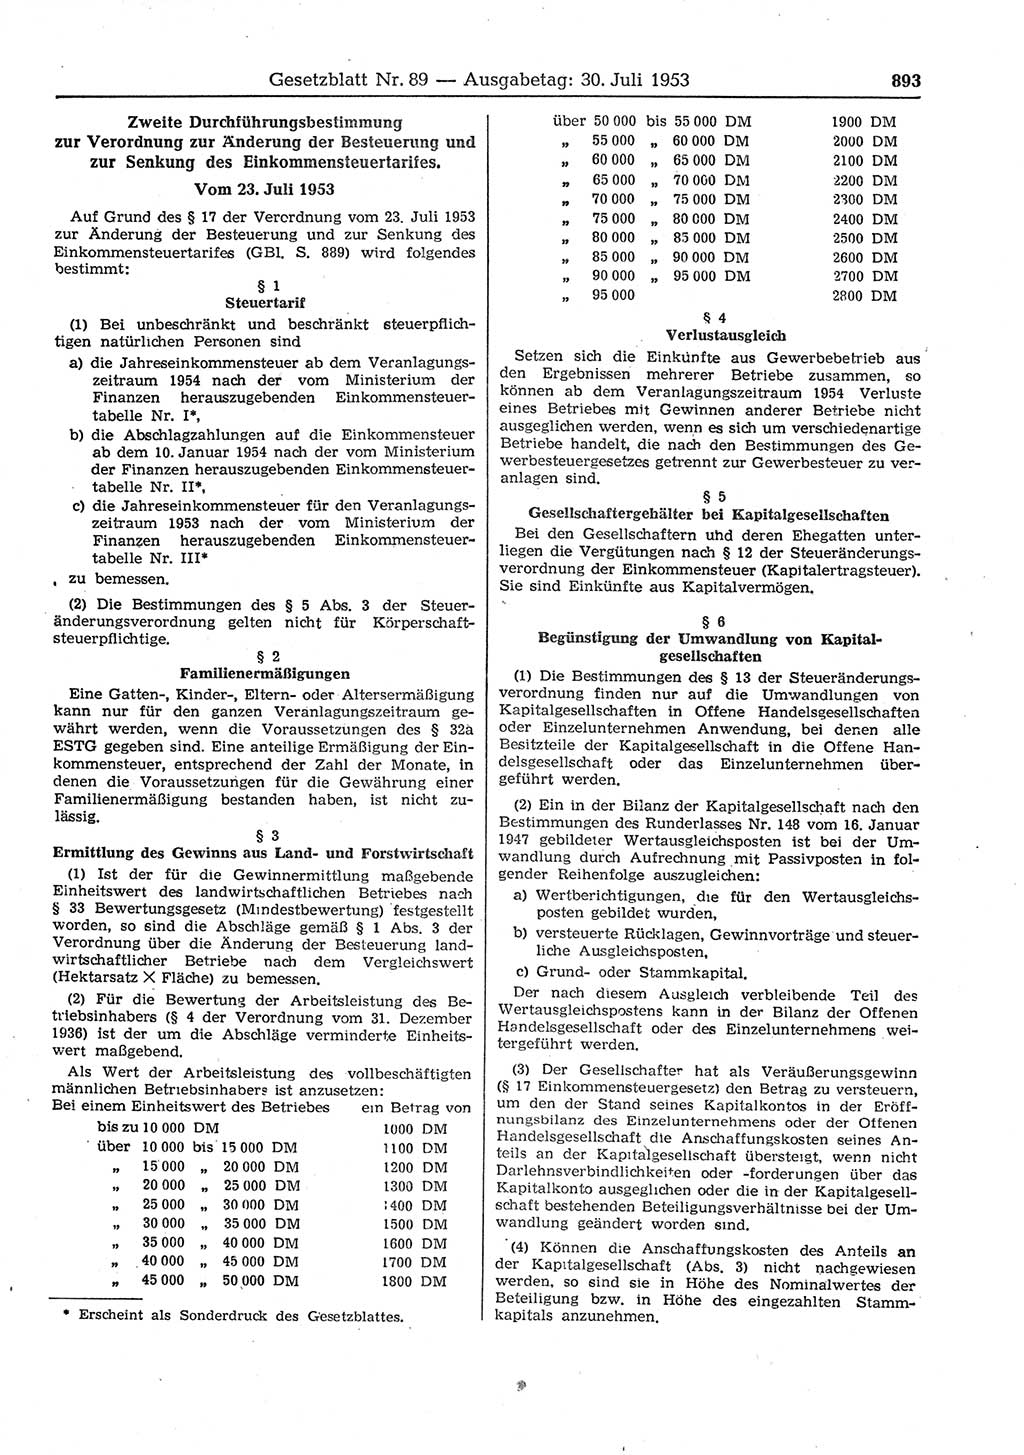 Gesetzblatt (GBl.) der Deutschen Demokratischen Republik (DDR) 1953, Seite 893 (GBl. DDR 1953, S. 893)